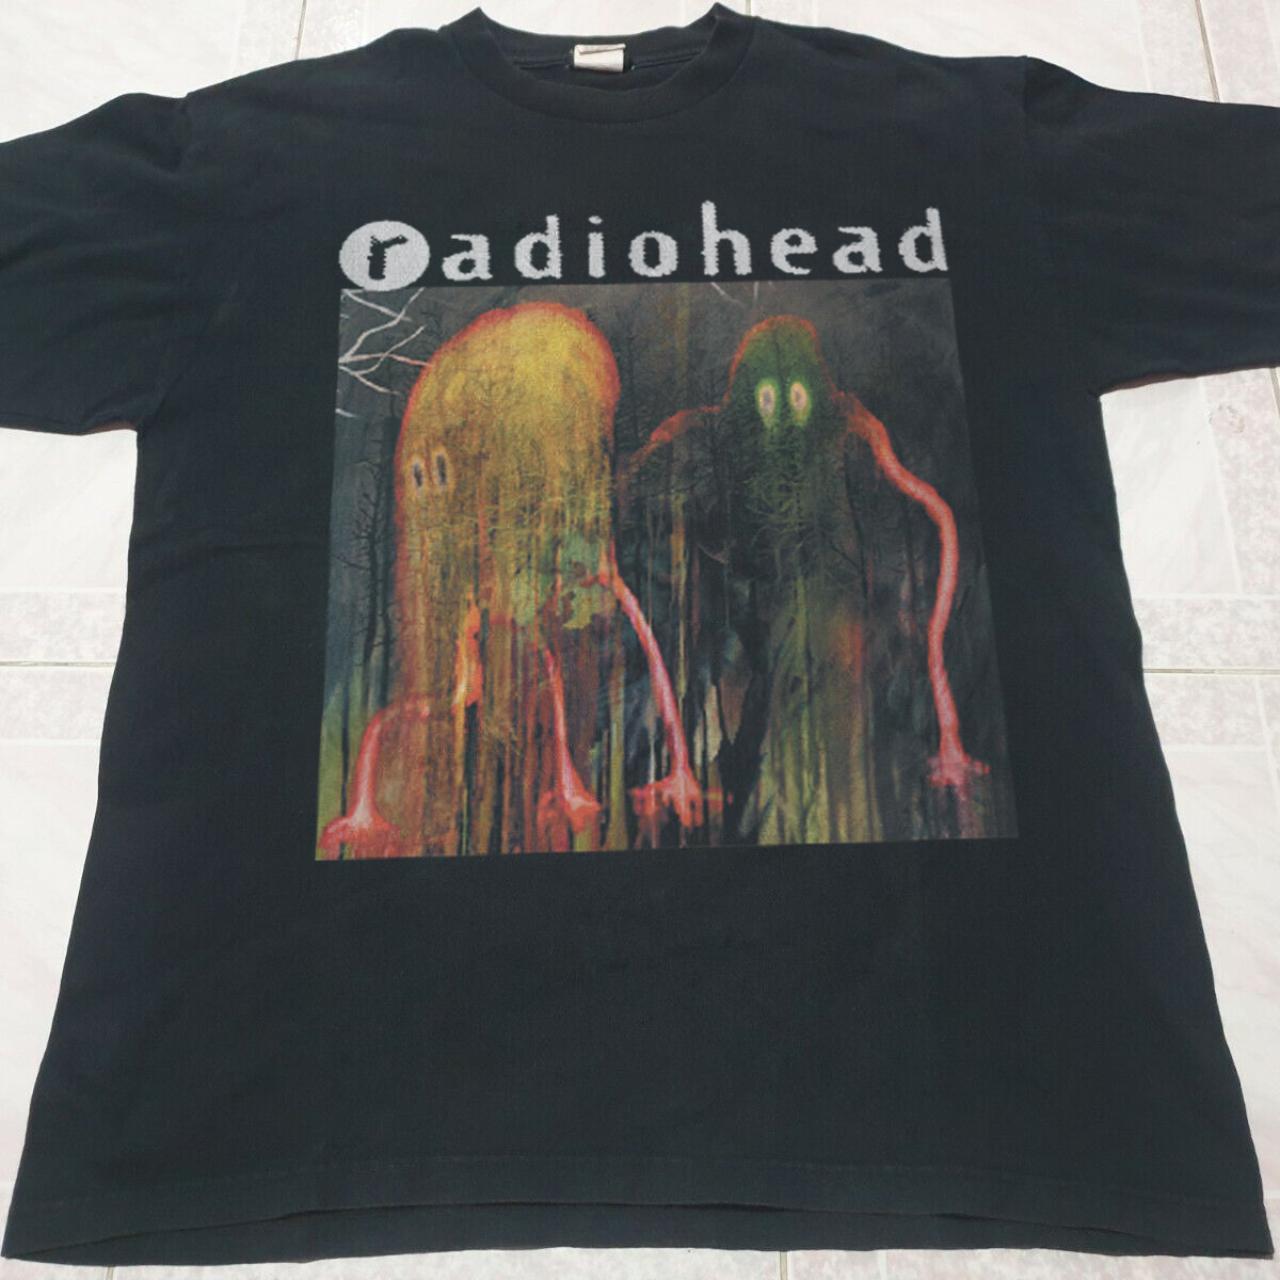 radiohead shirt size Large pit to pit 22 x... - Depop